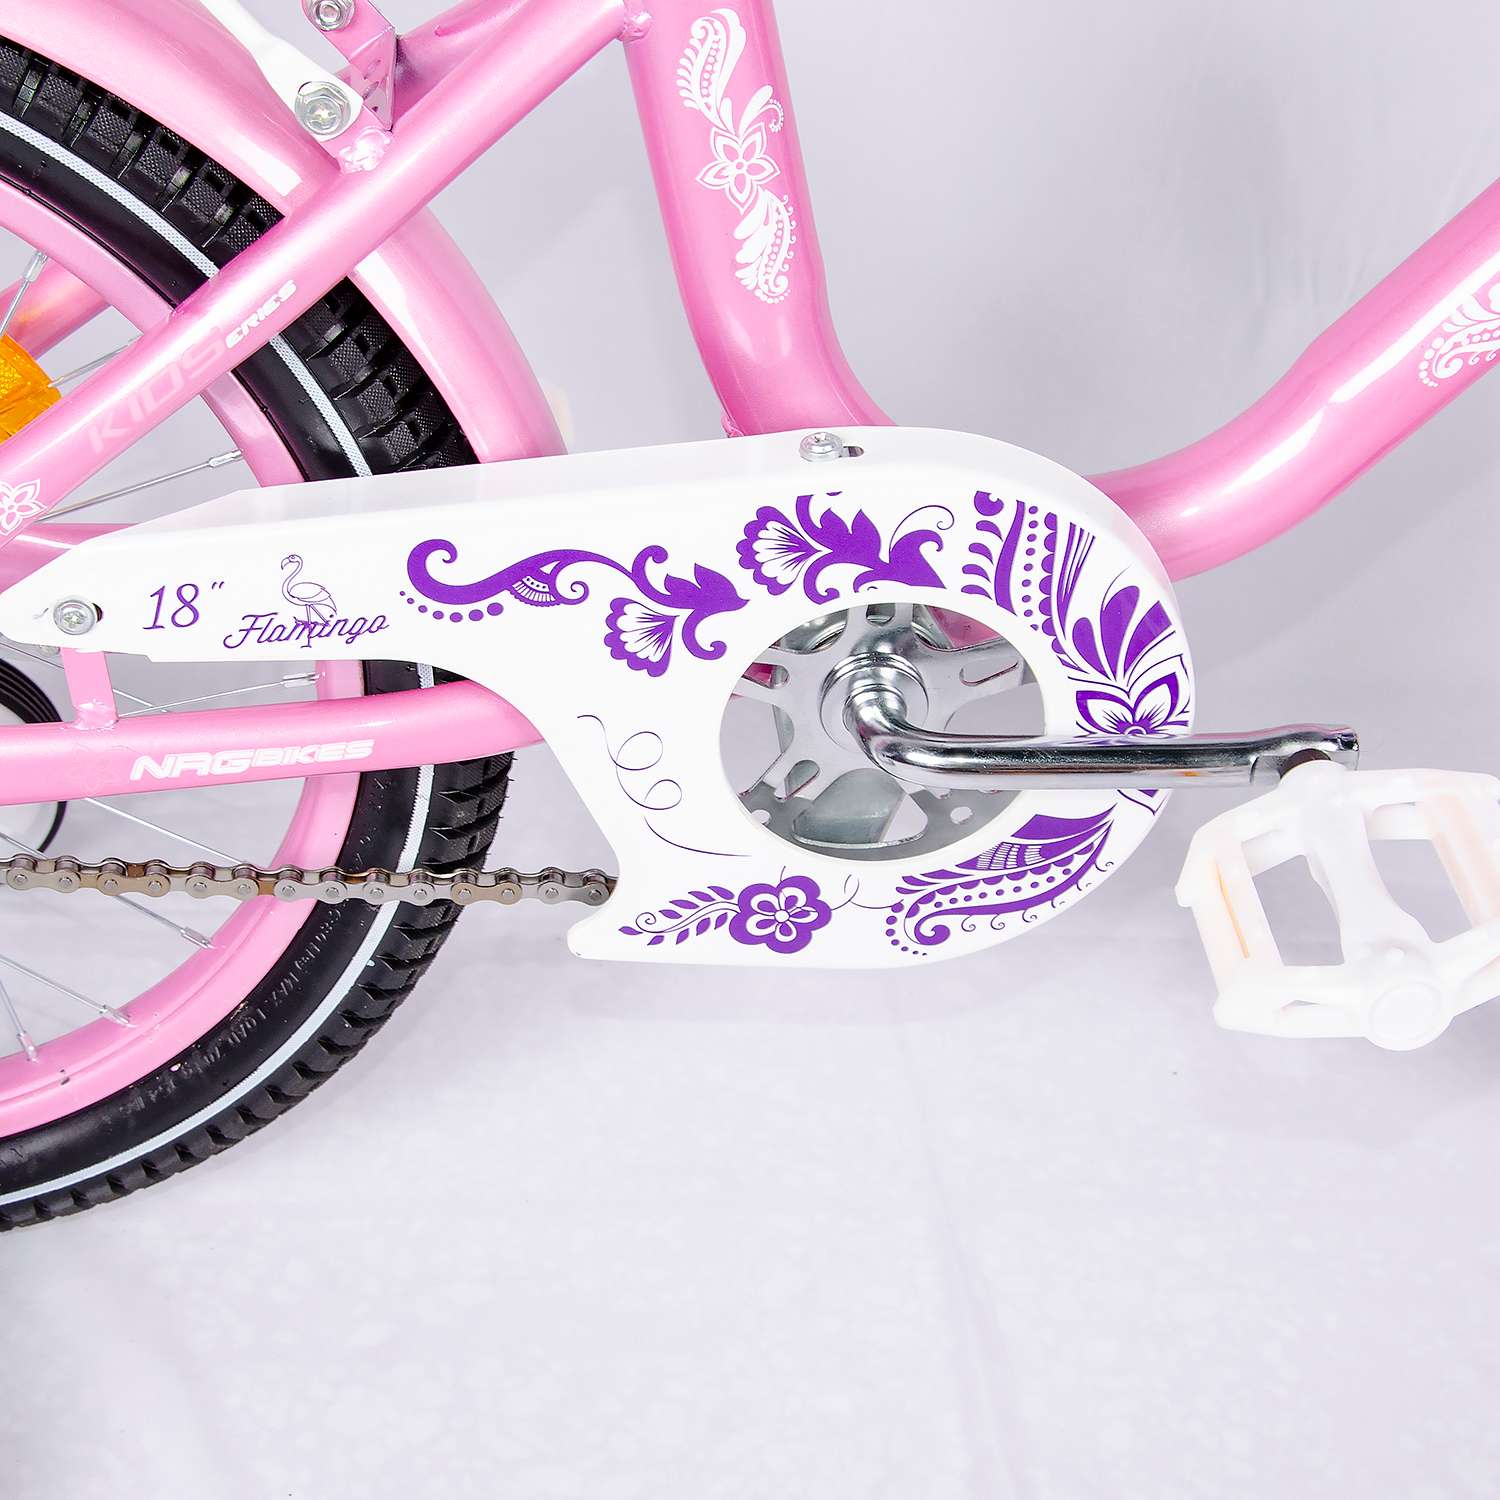 Велосипед NRG BIKES Flamingo - фото 8